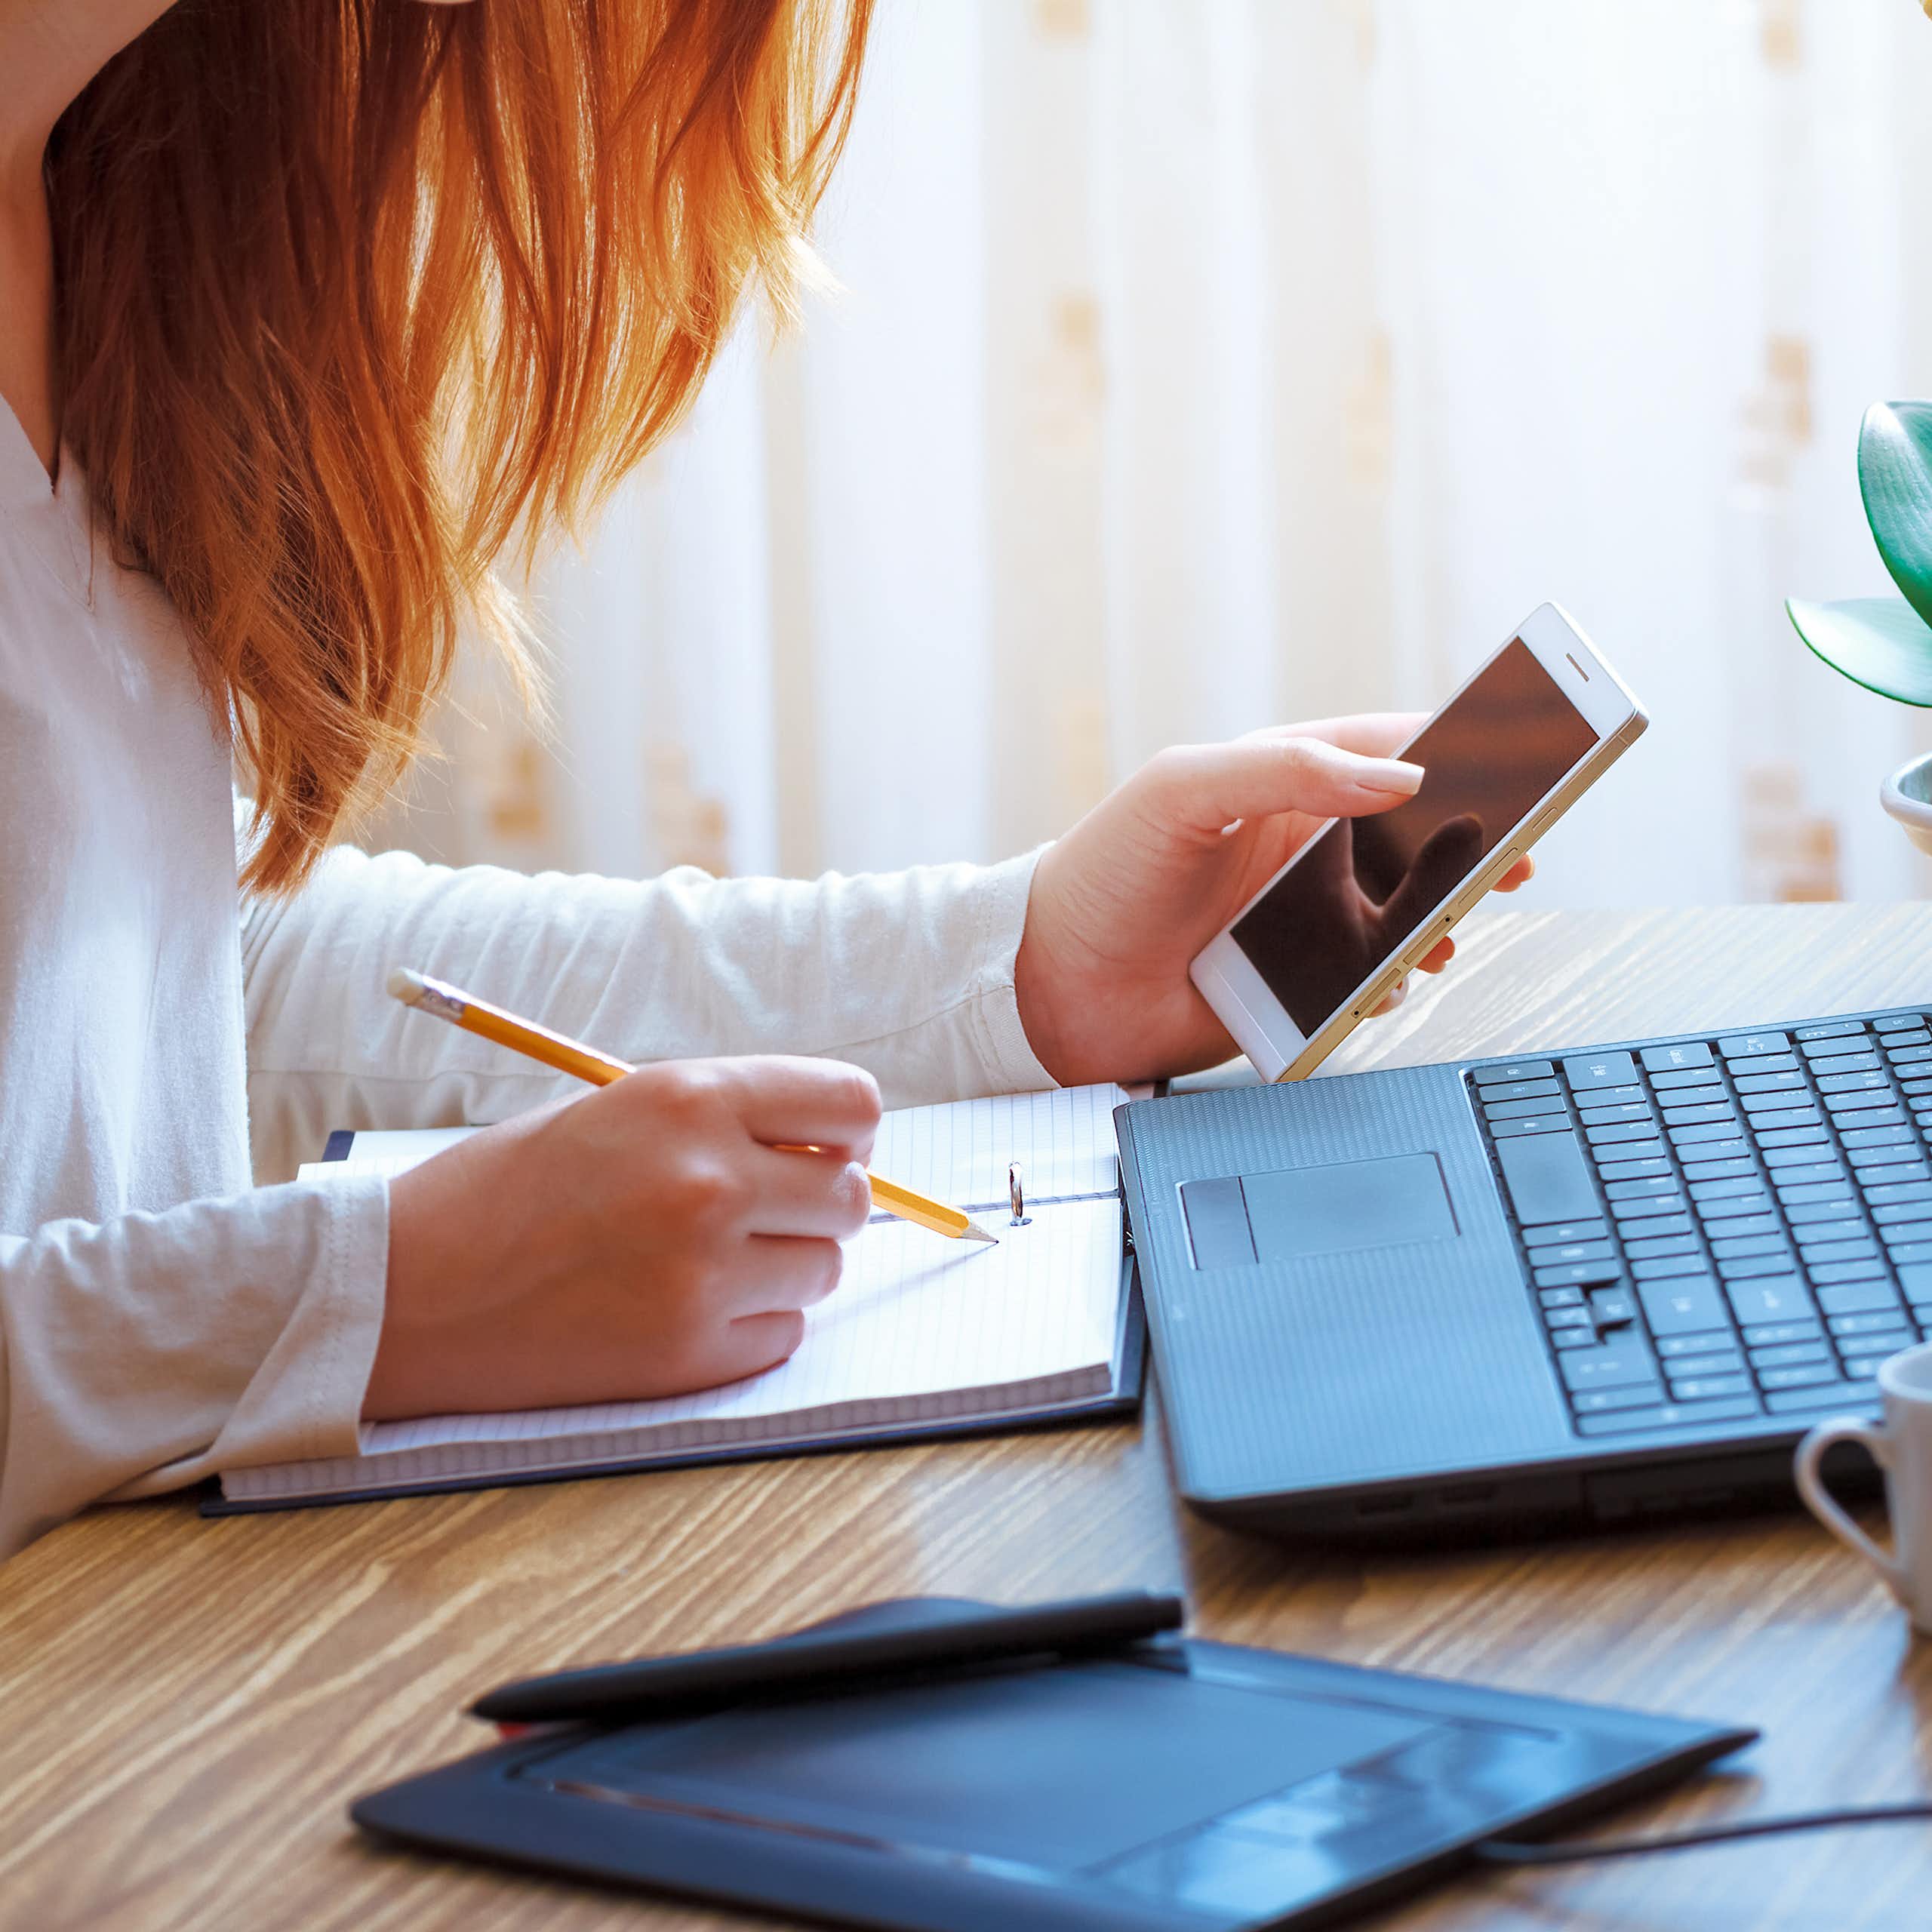 Une jeune femme assise à un bureau, devant un ordinateur portable, consulte son téléphone et écrit en même-temps dans un carnet.